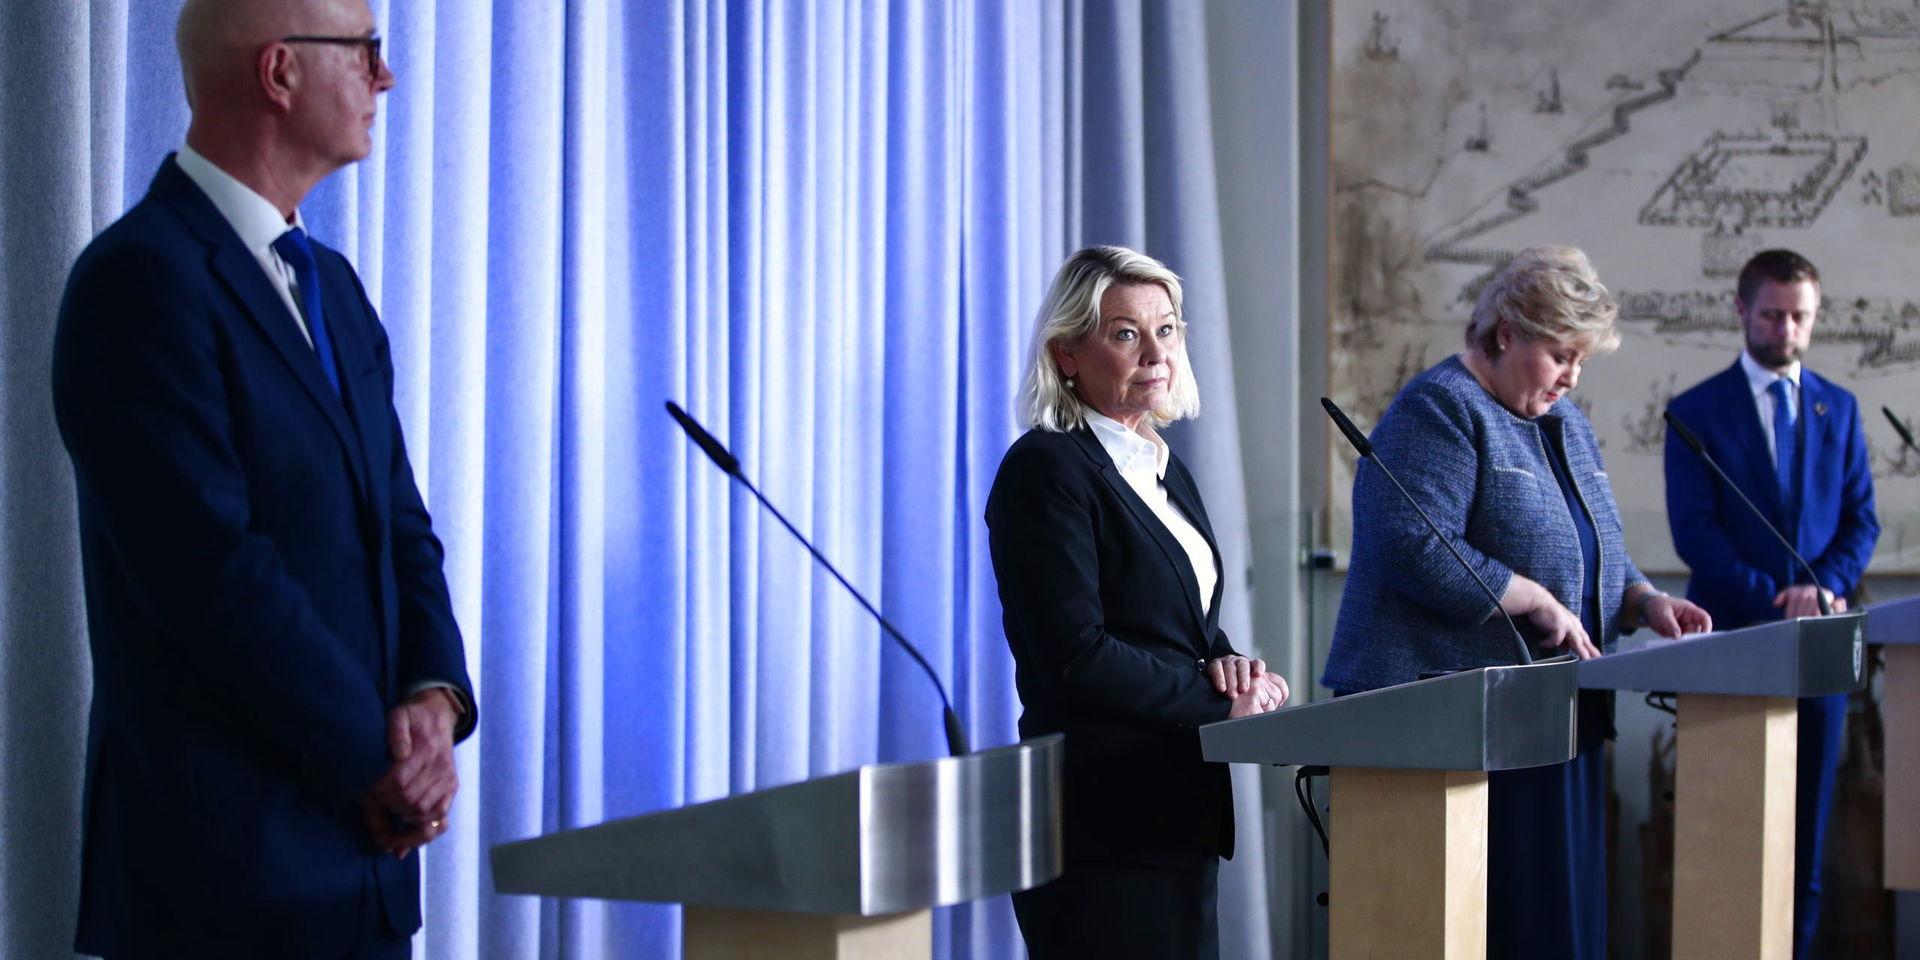 Bjørn Guldvog deltar ofta vid dagliga presskonferenser om coronaviruset i Norge, här närmast kameran, bredvid justitieminister Monica Mæland, statsminister Erna Solberg och hälsominister Bent Høie.